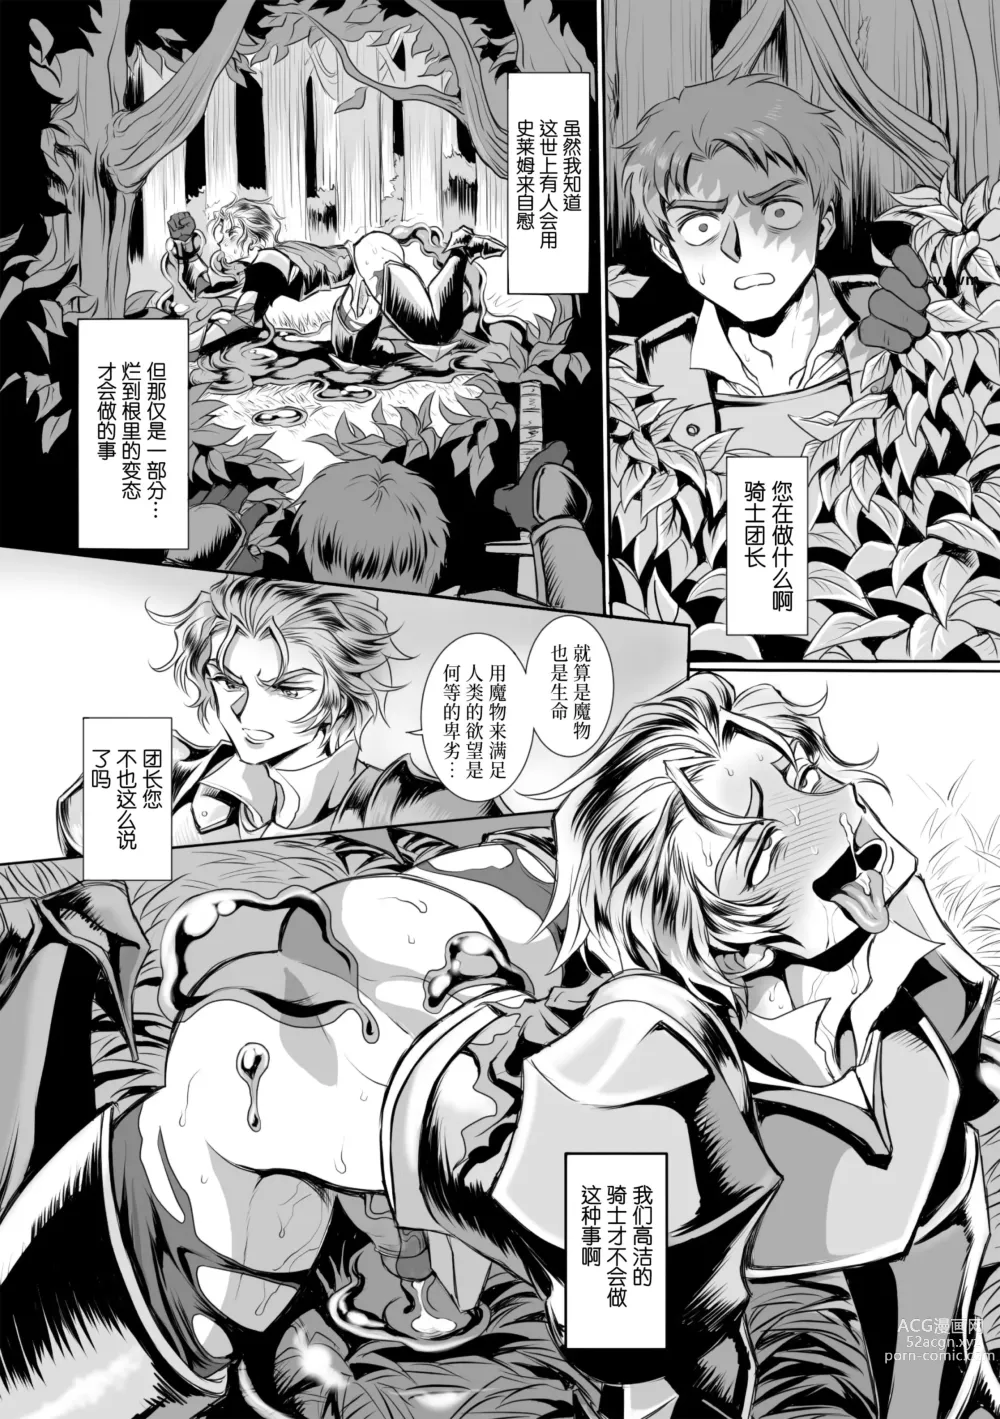 Page 15 of manga  附身奸骑士 斯塔里昂 被恶心男夺取意识凄惨高潮! (decensored)